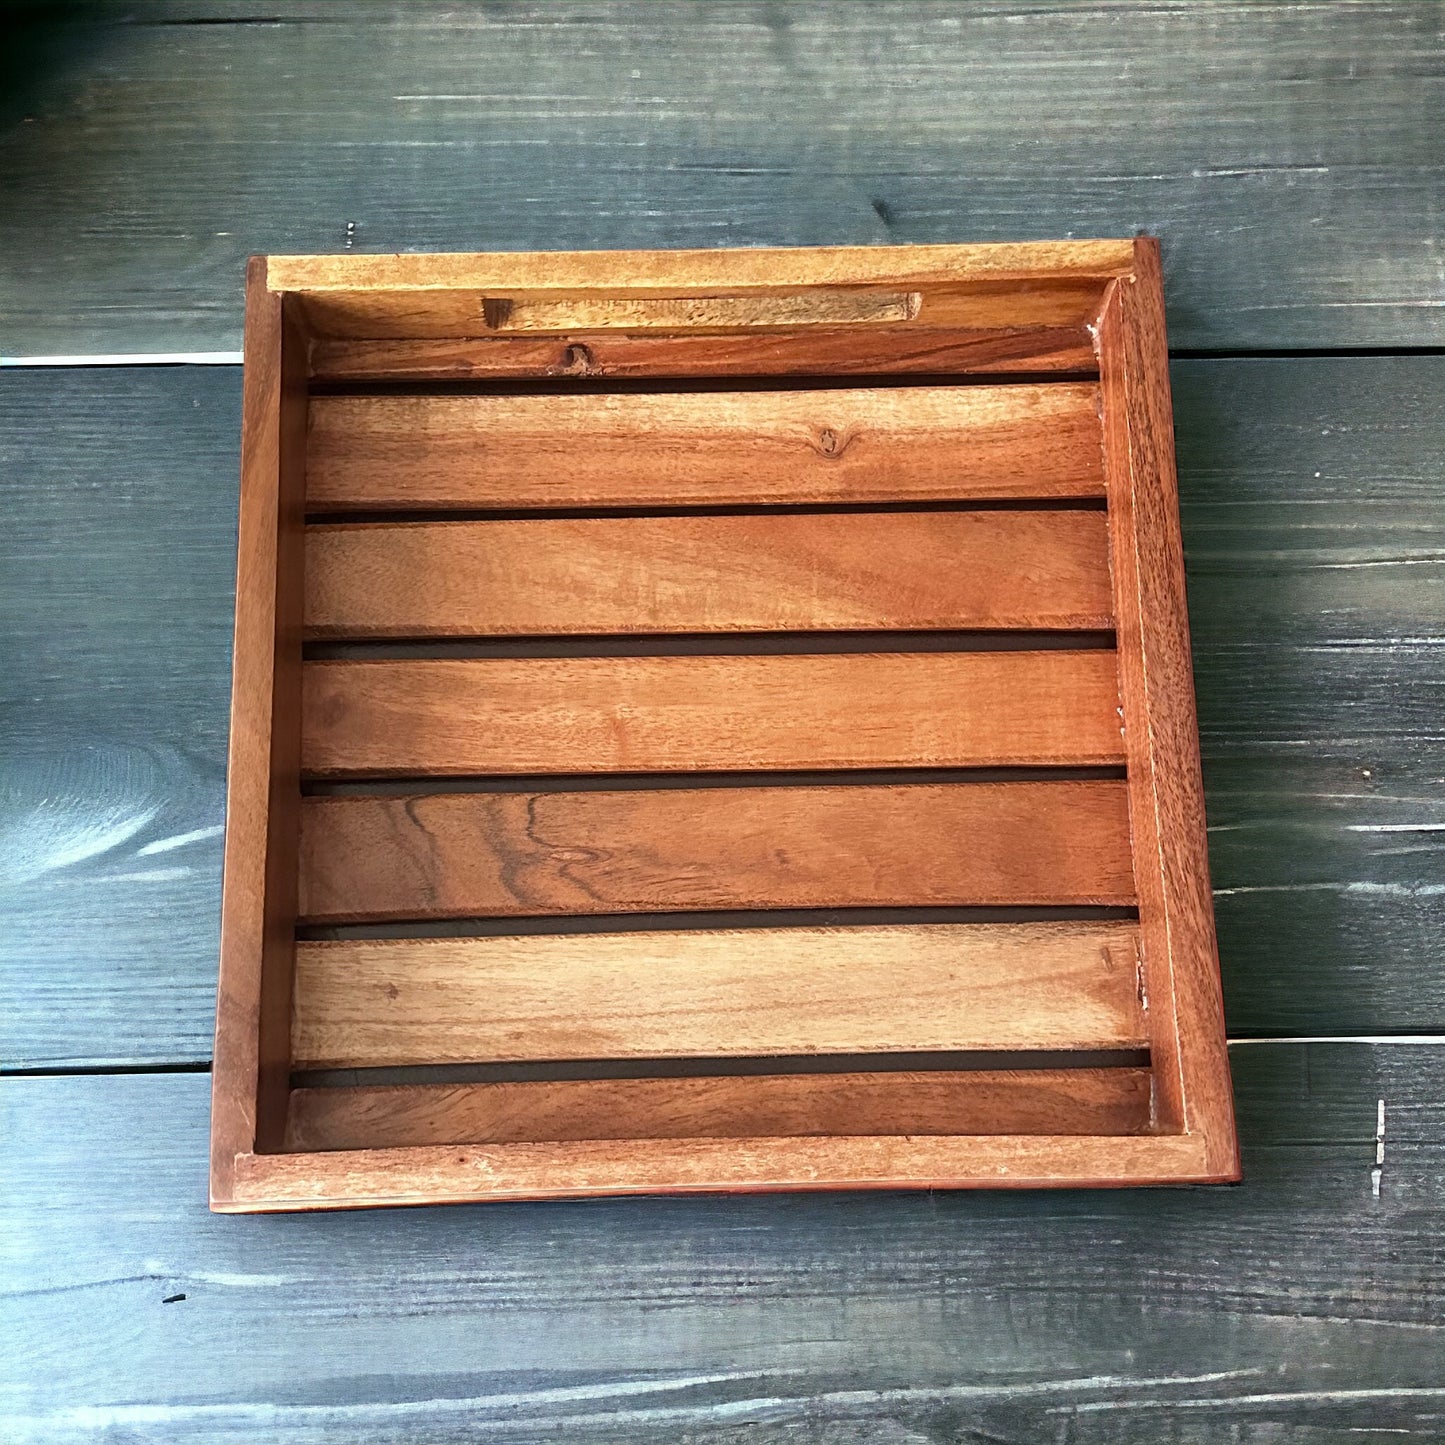 Acacia aura wooden tray - medium size - single